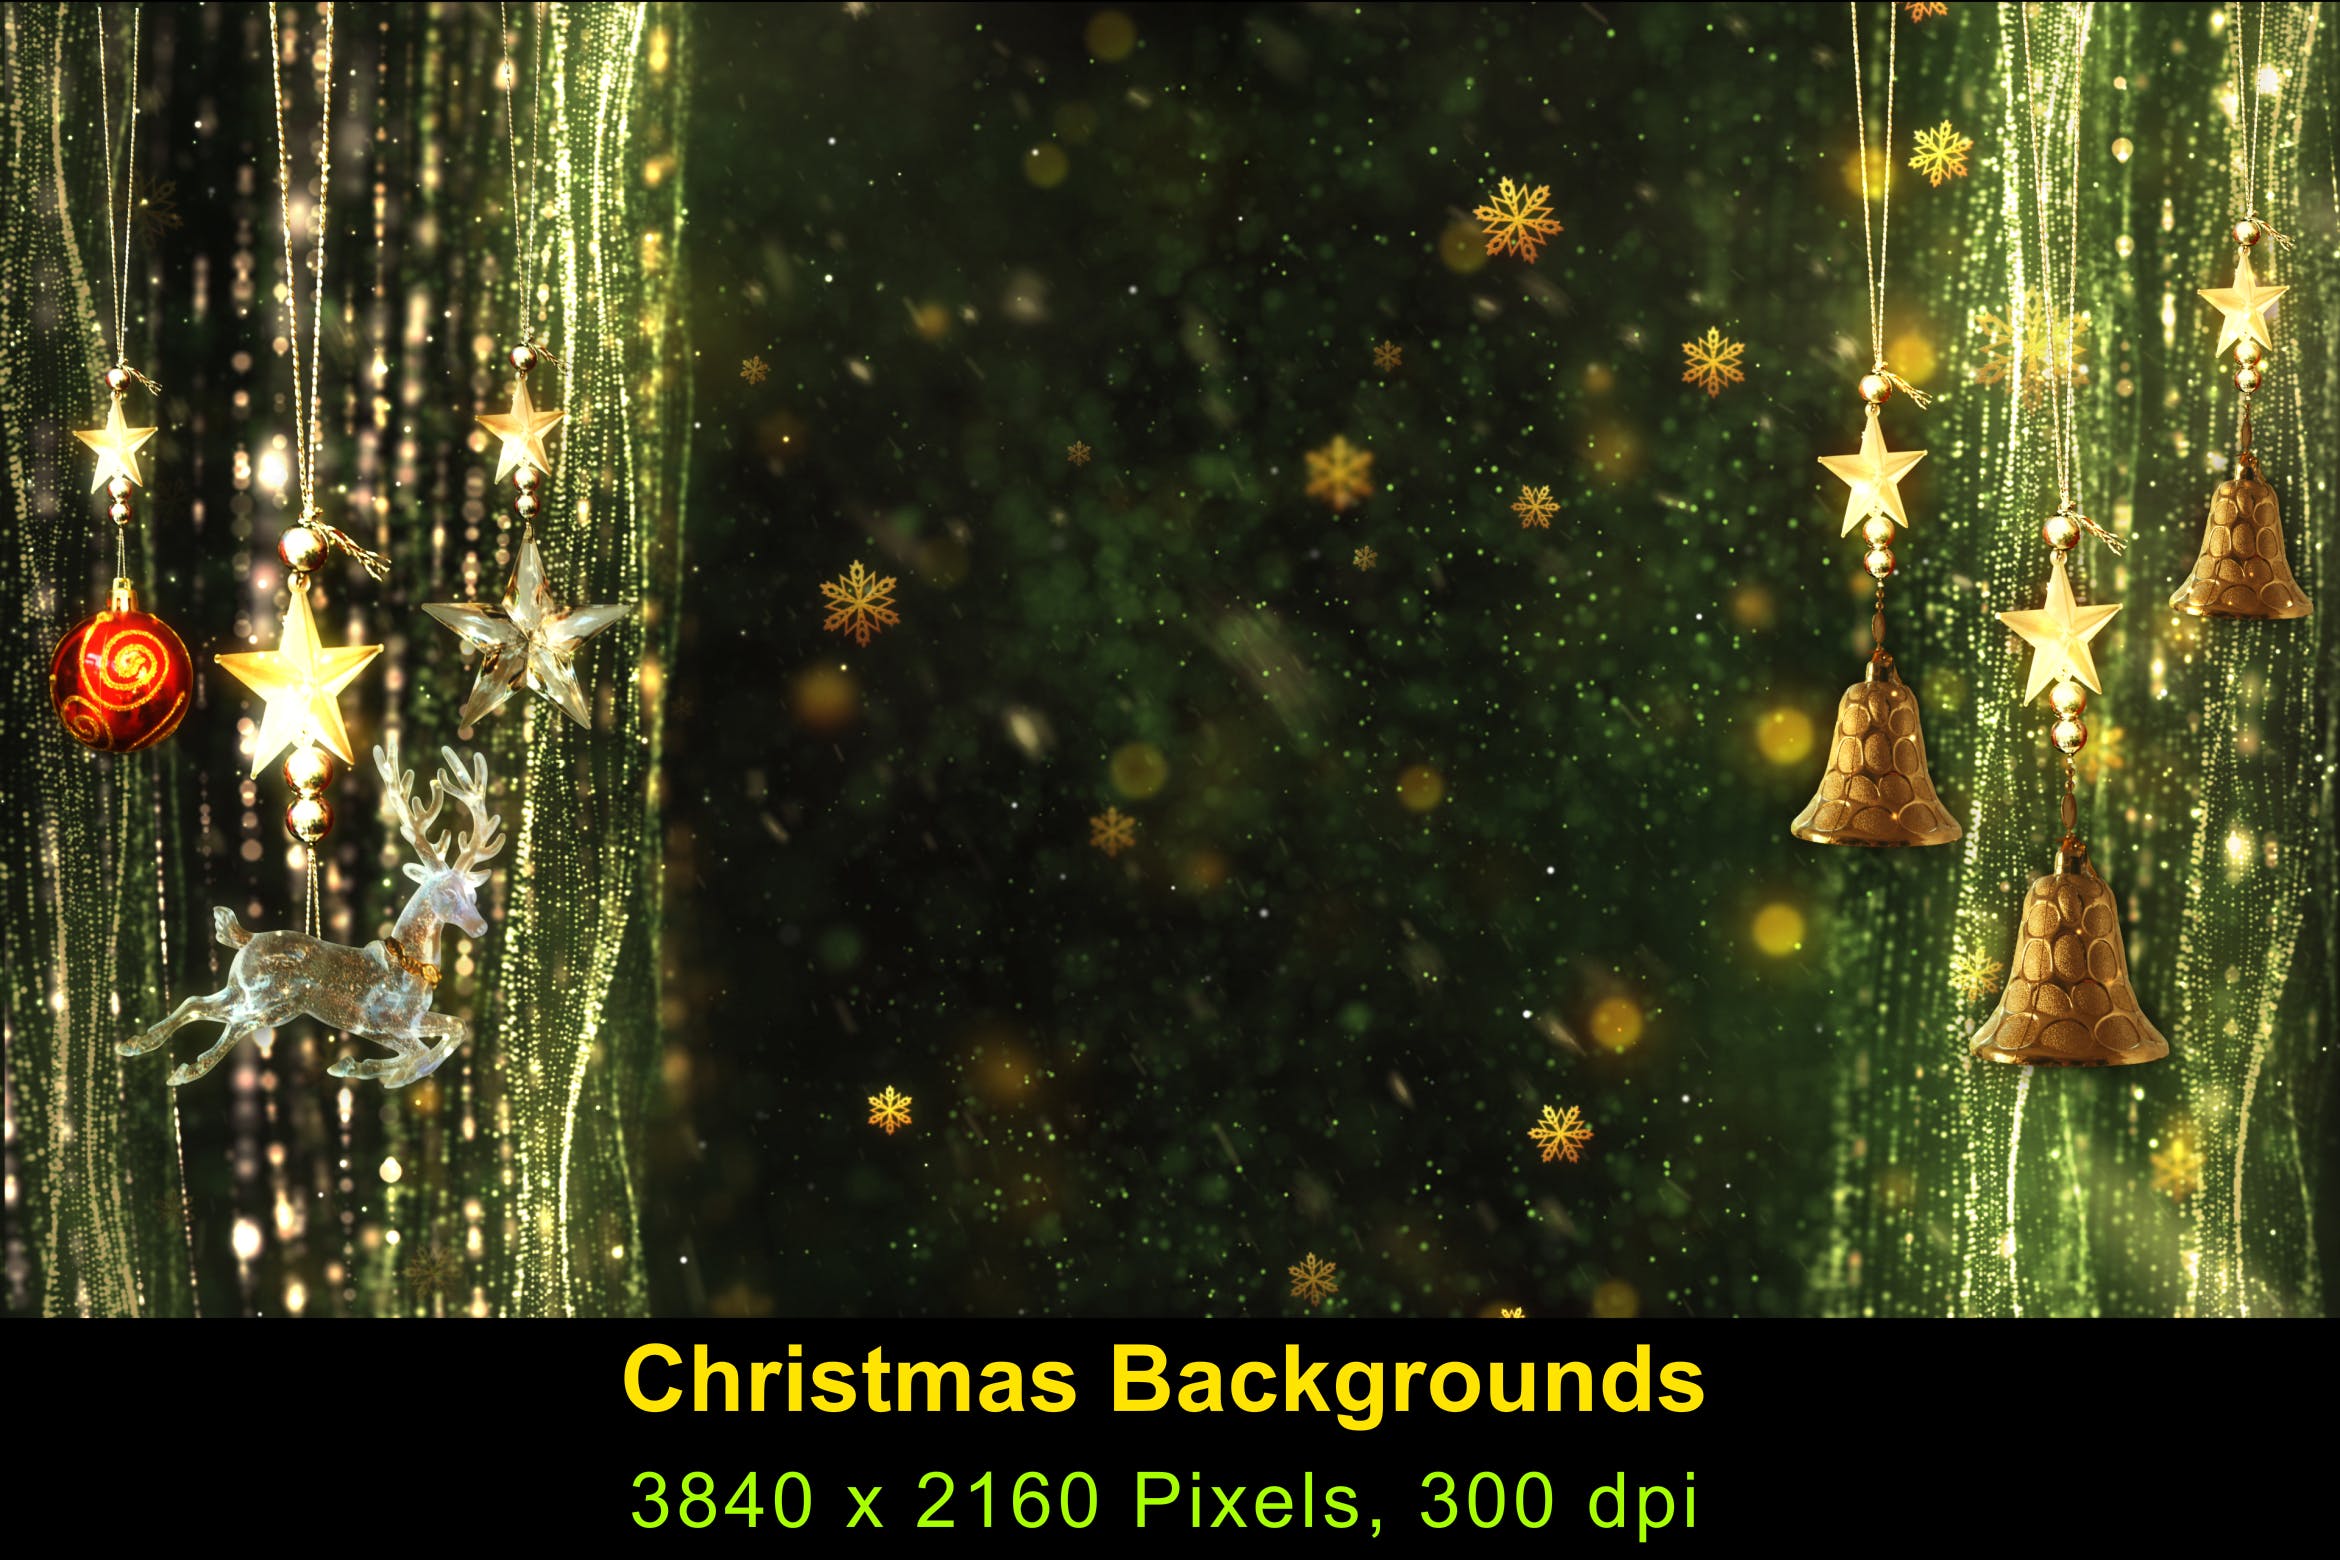 高清圣诞节灯饰背景素材v6 Christmas Background 6插图